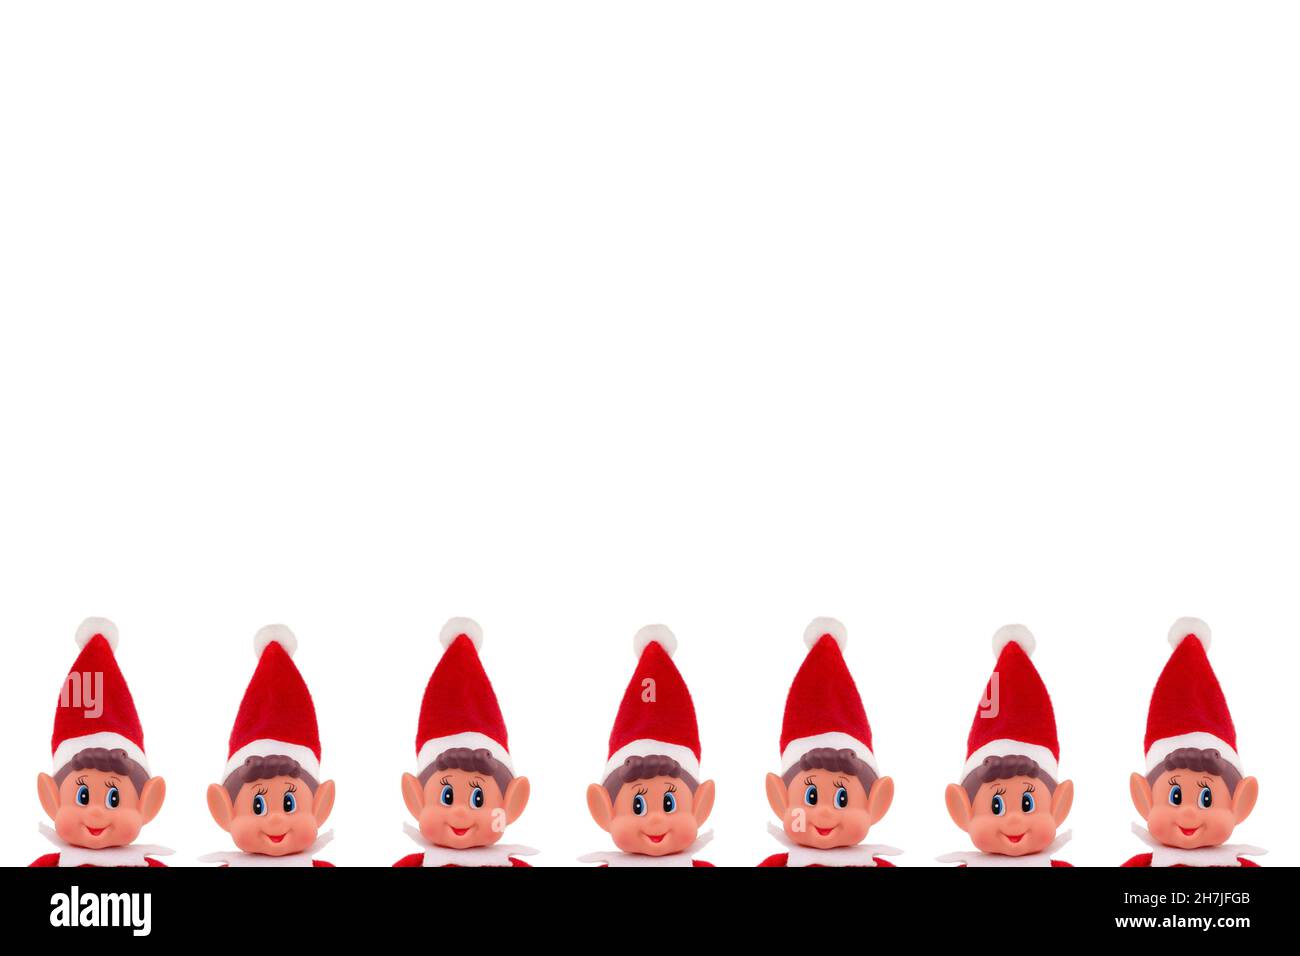 Noël Elf jouet peeking têtes sur un fond blanc isolé avec espace de copie.Esprit de Noël, tradition de Noël. Banque D'Images